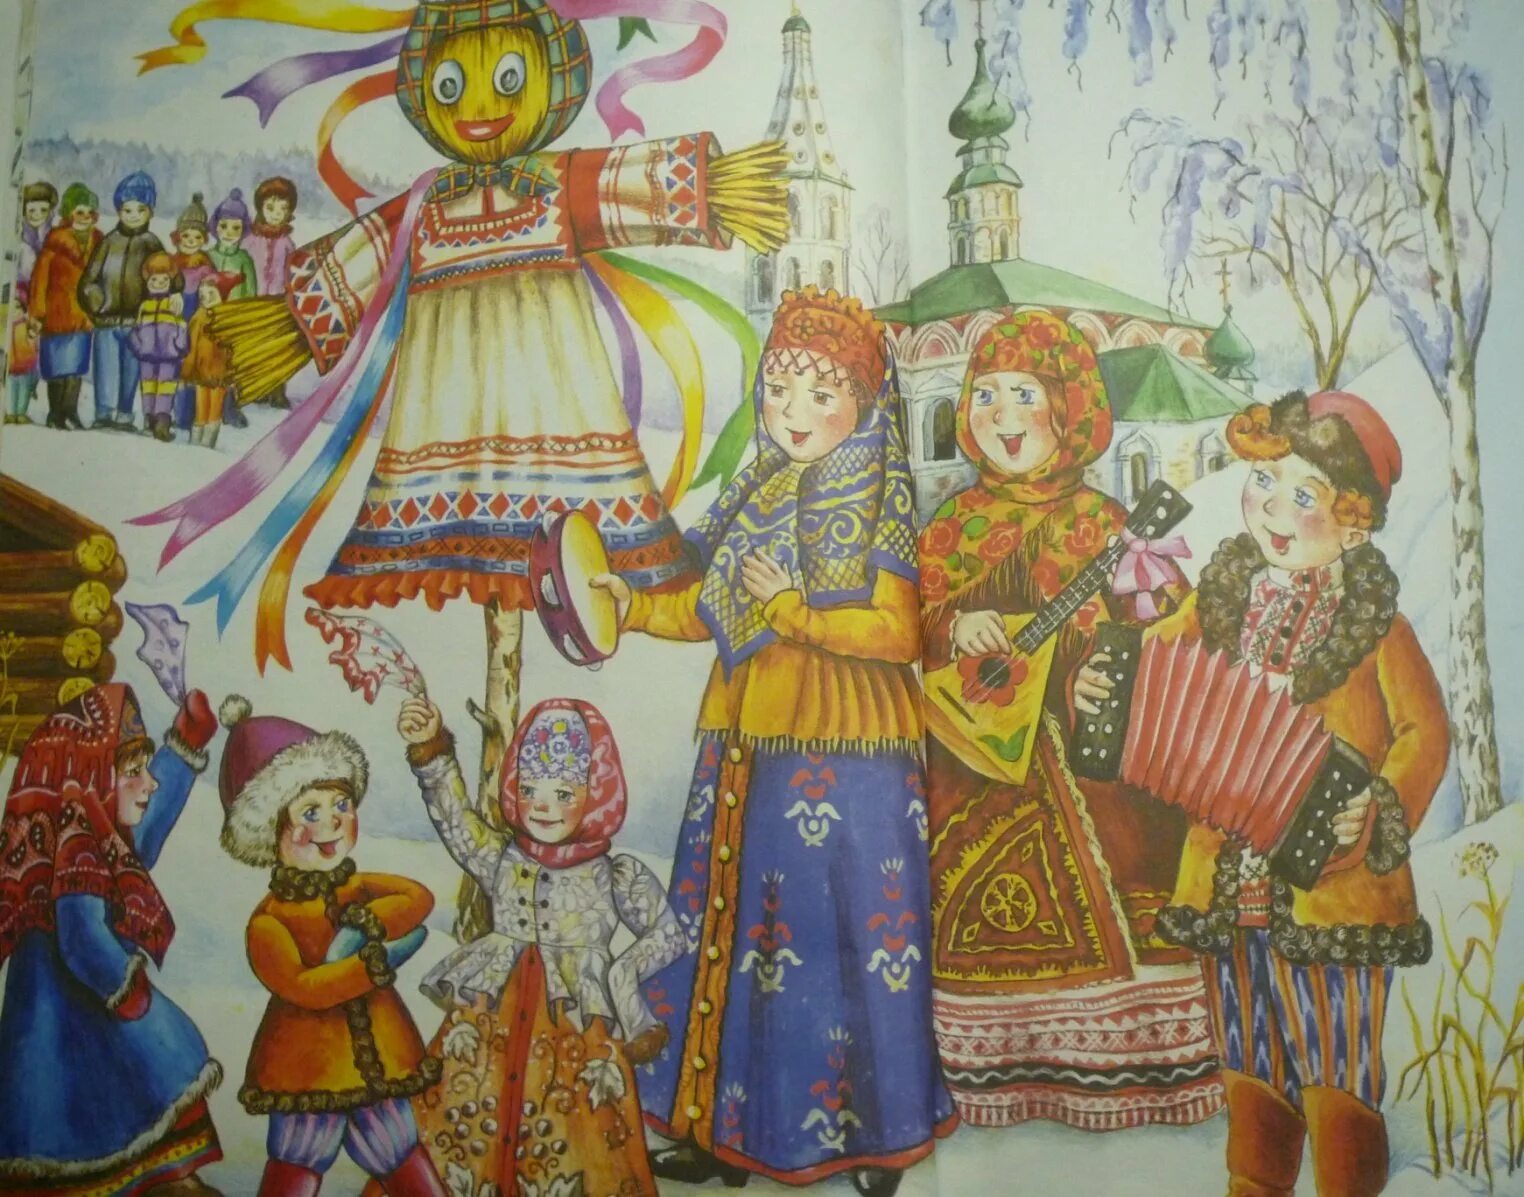 Н. Фетисов - "широкая Масленица". Масленичные гуляния в древней Руси. Музыка масленица для детей слушать